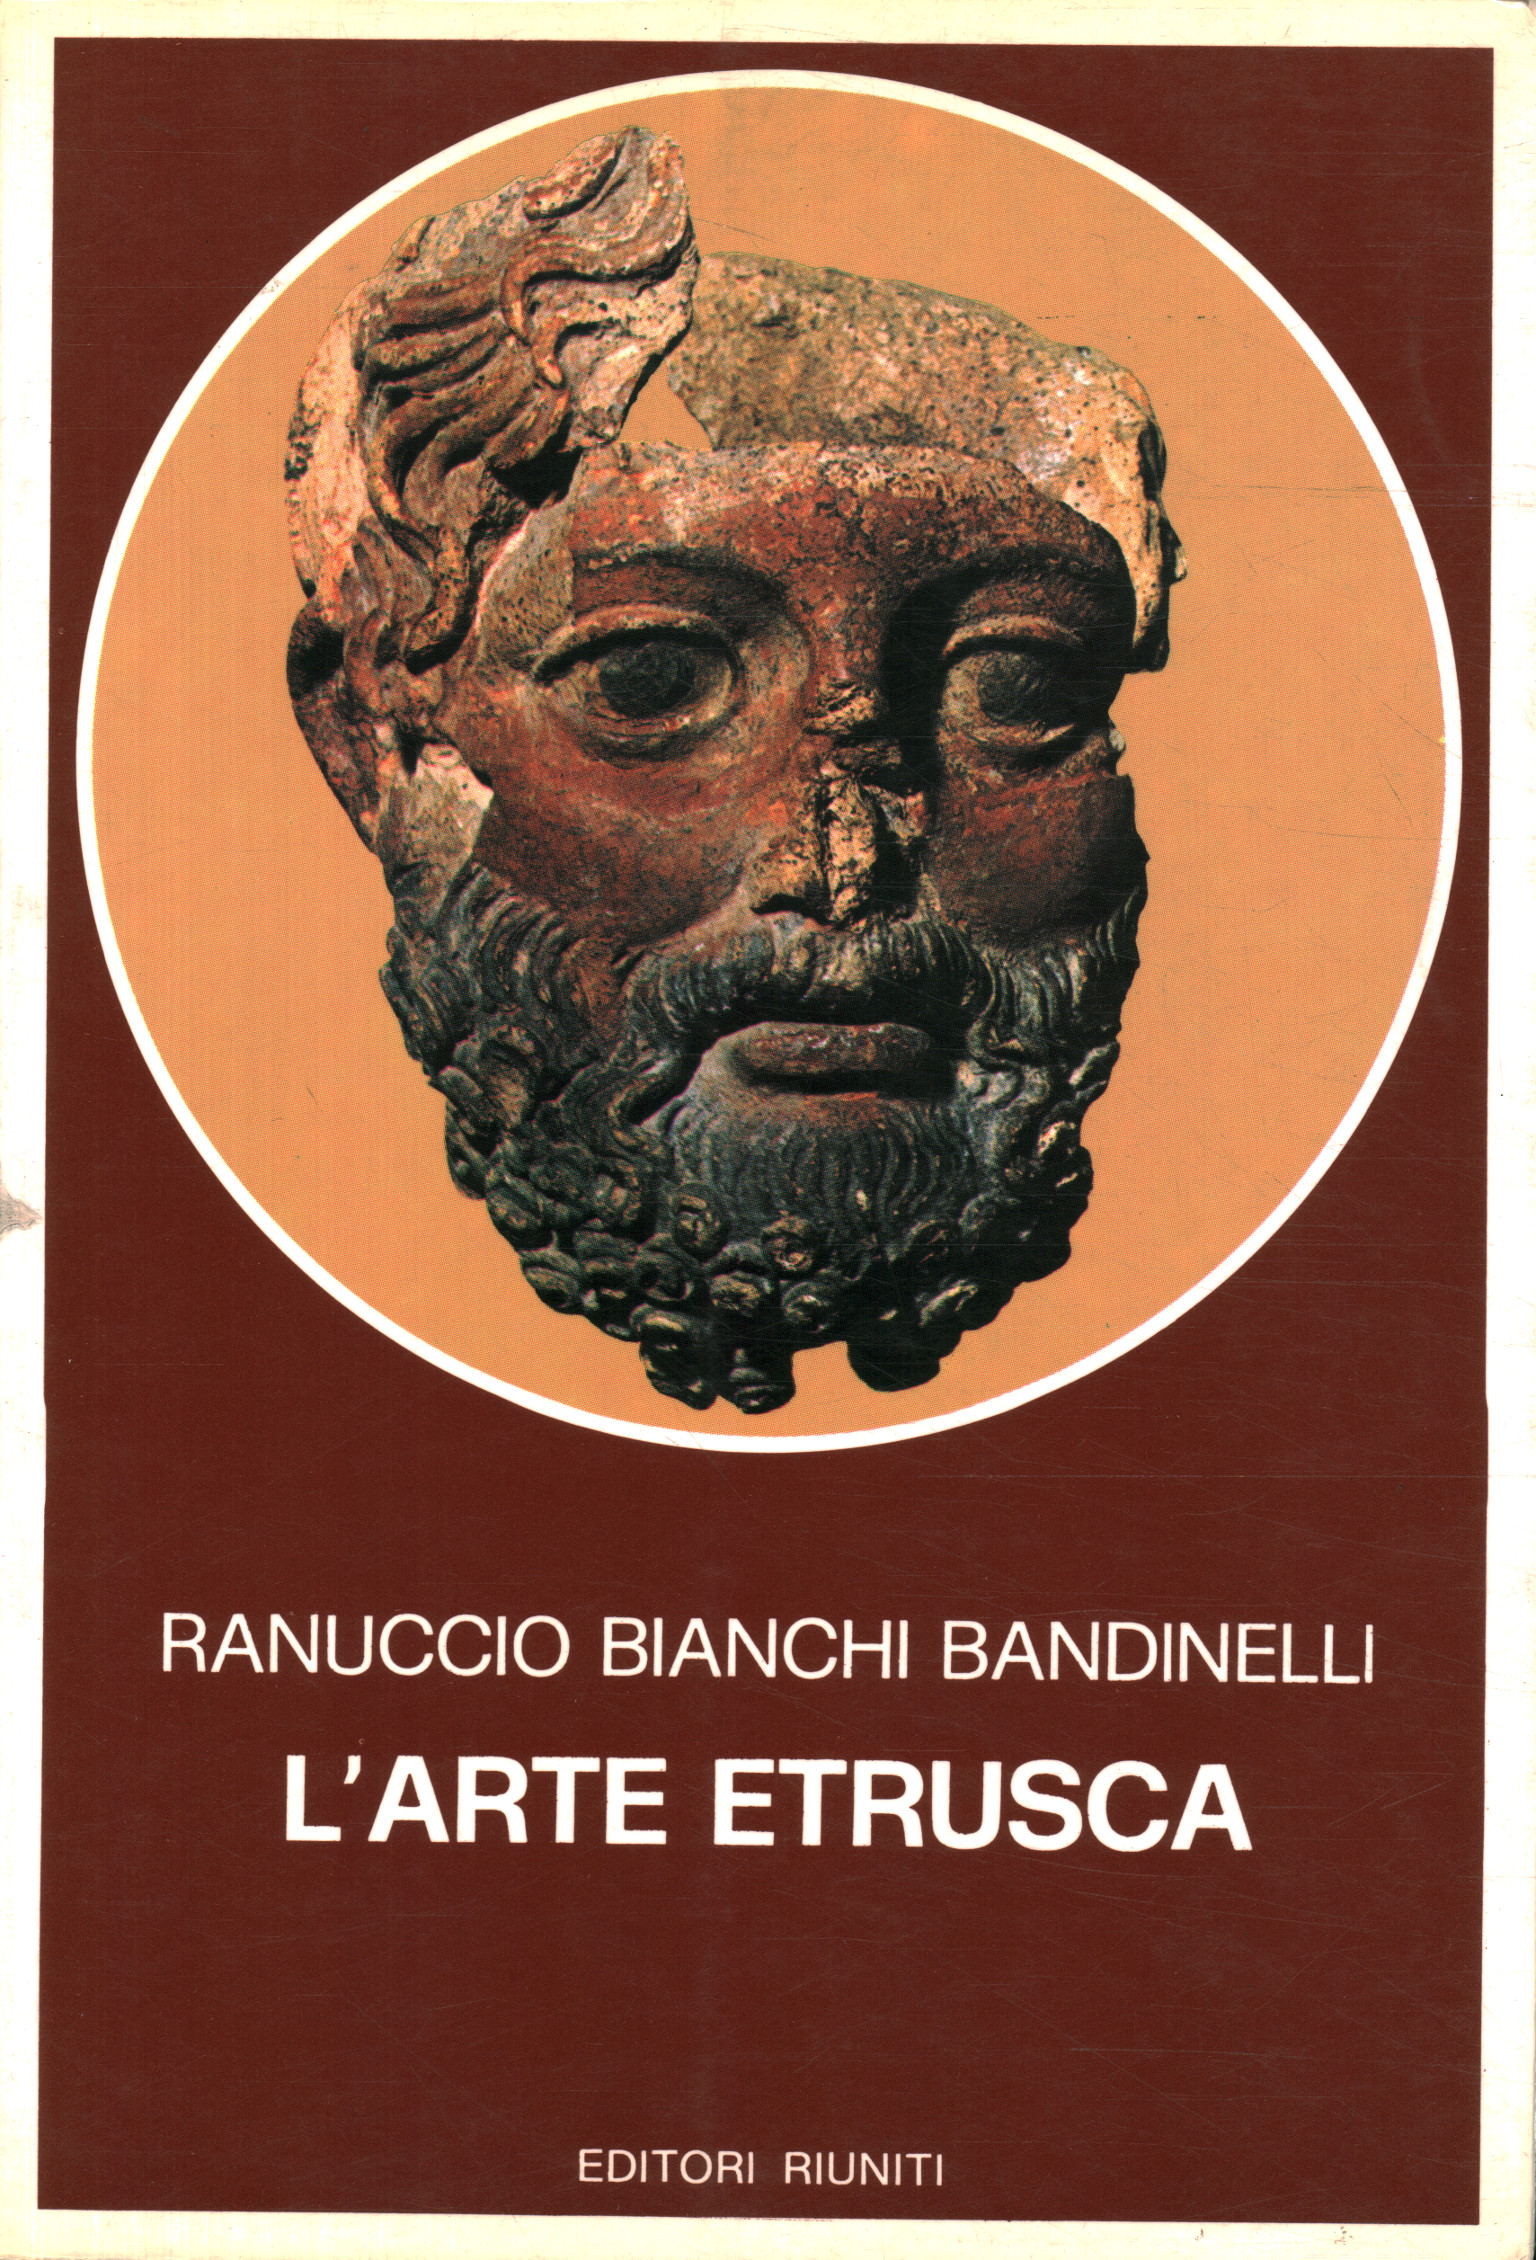 Etruscan art